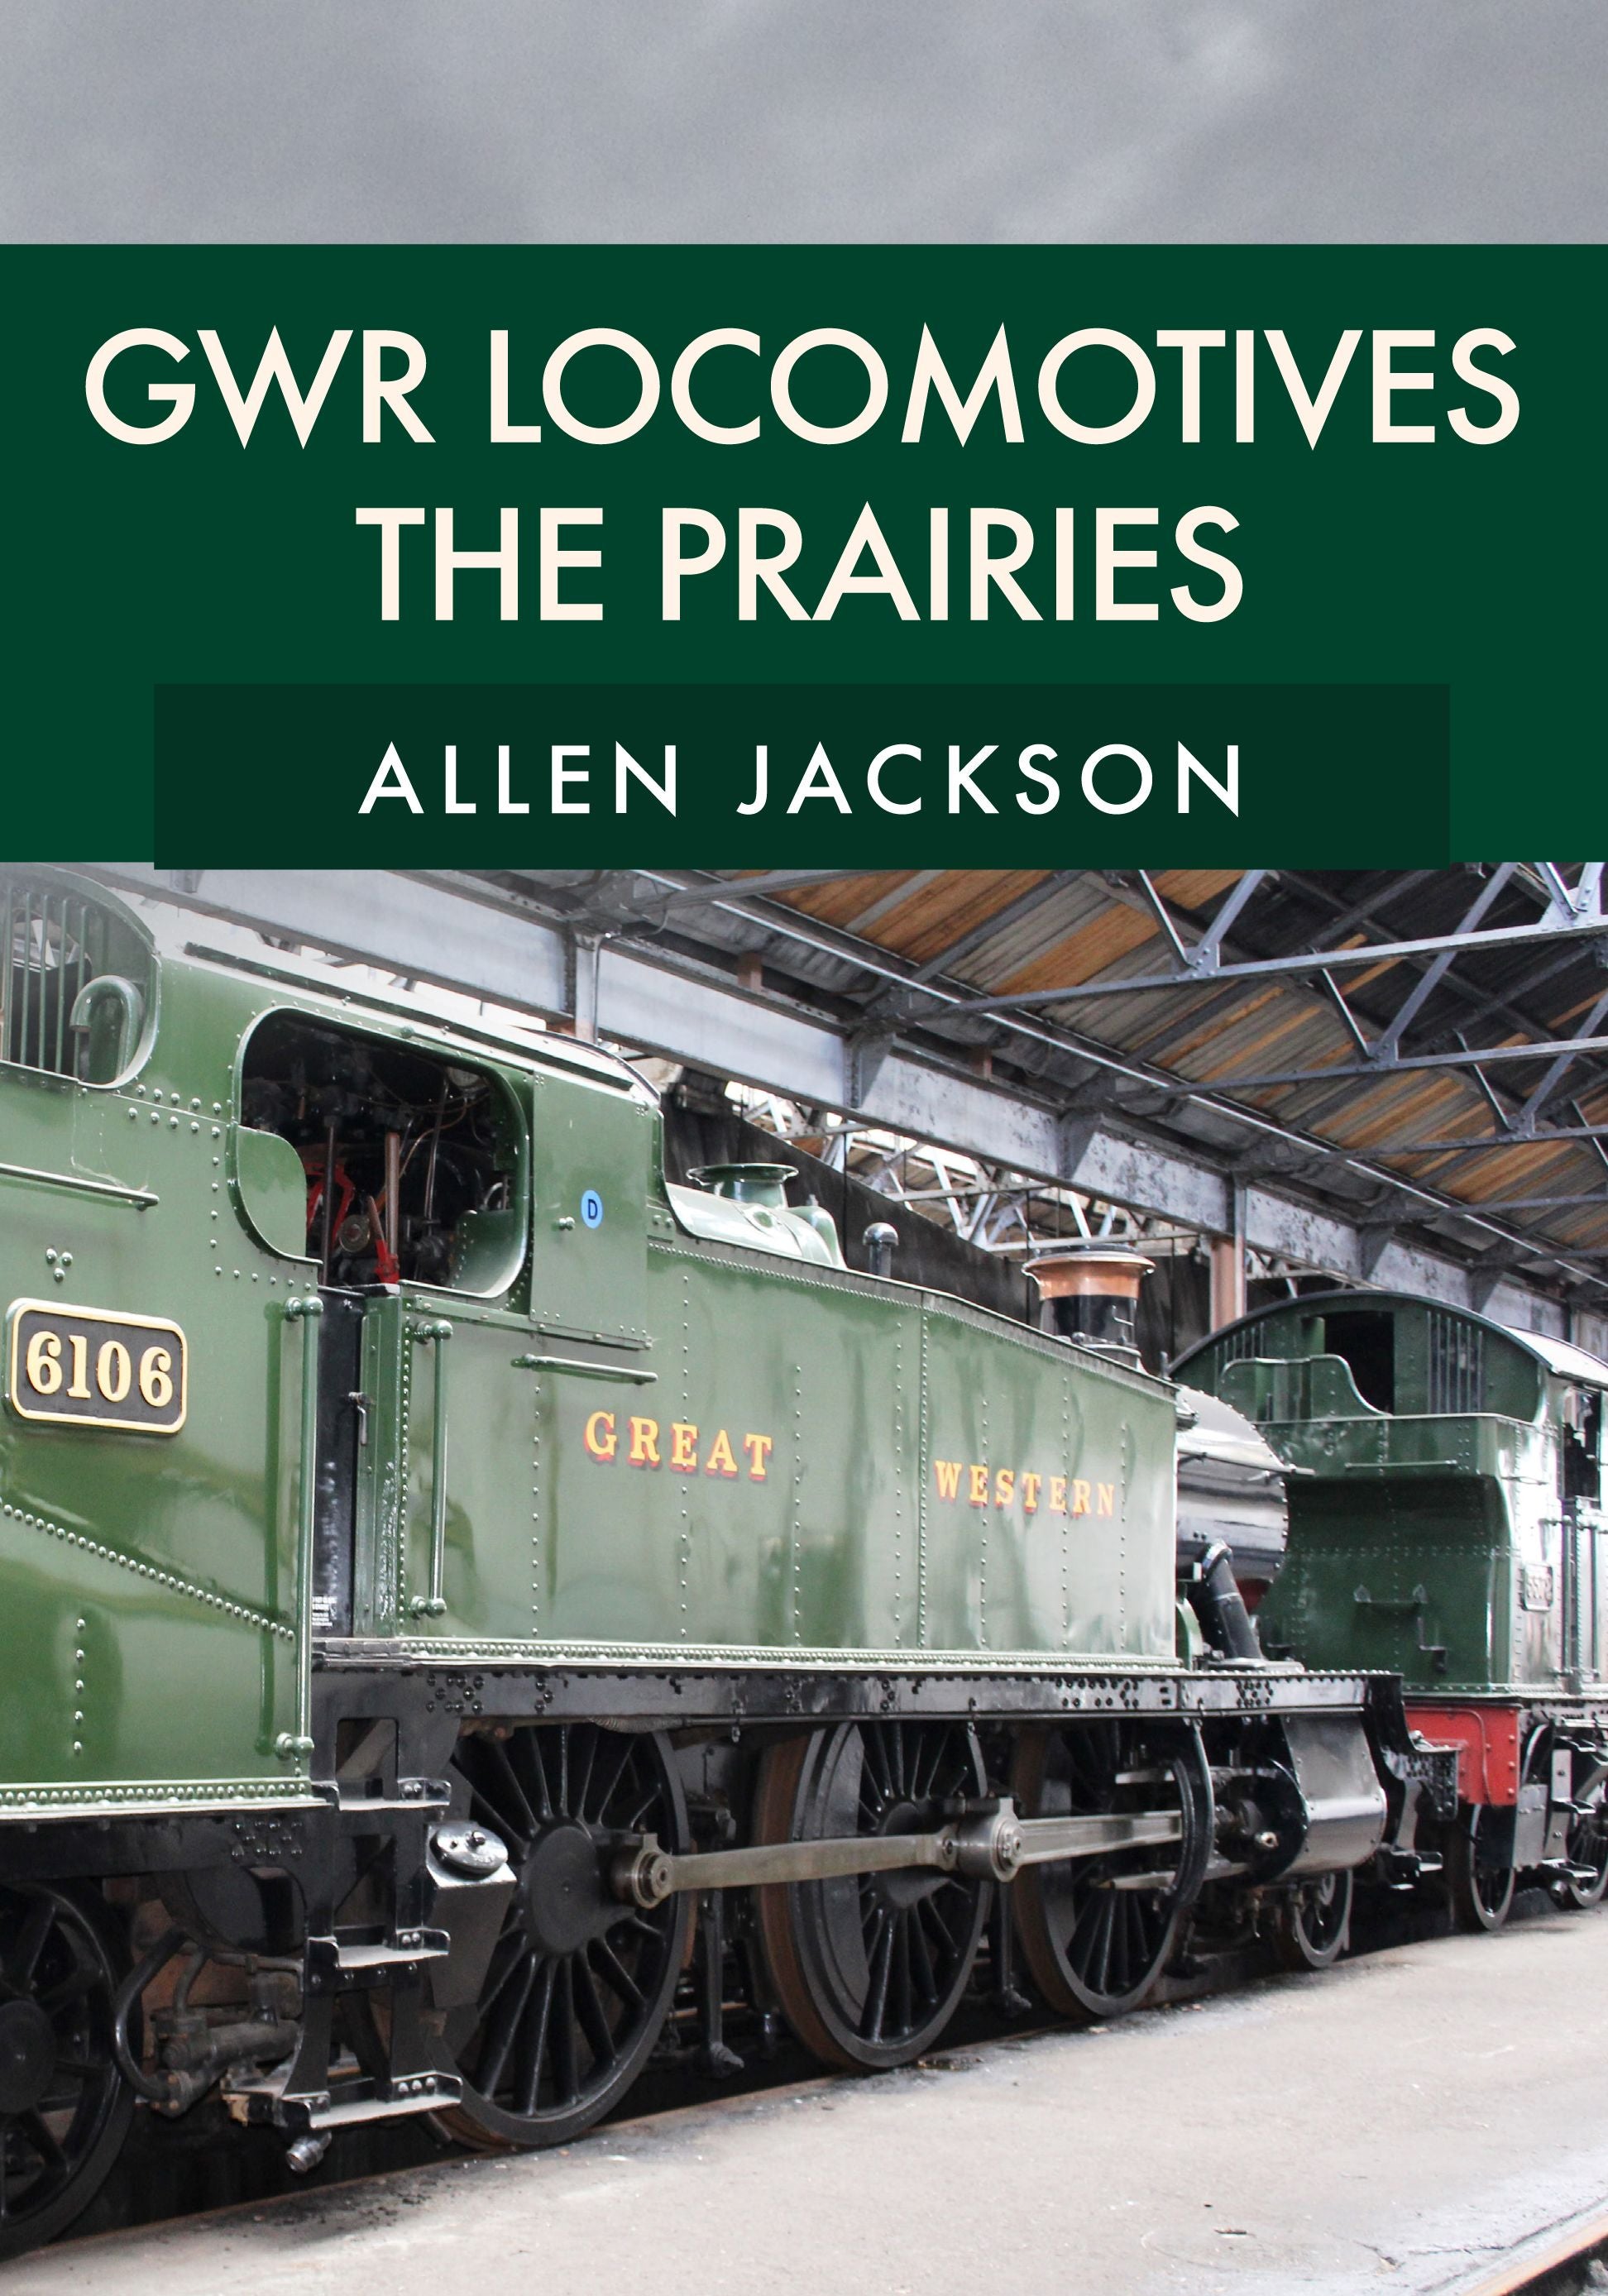 GWR Locomotives: The Prairies - Allen Jackson - Chester Model Centre